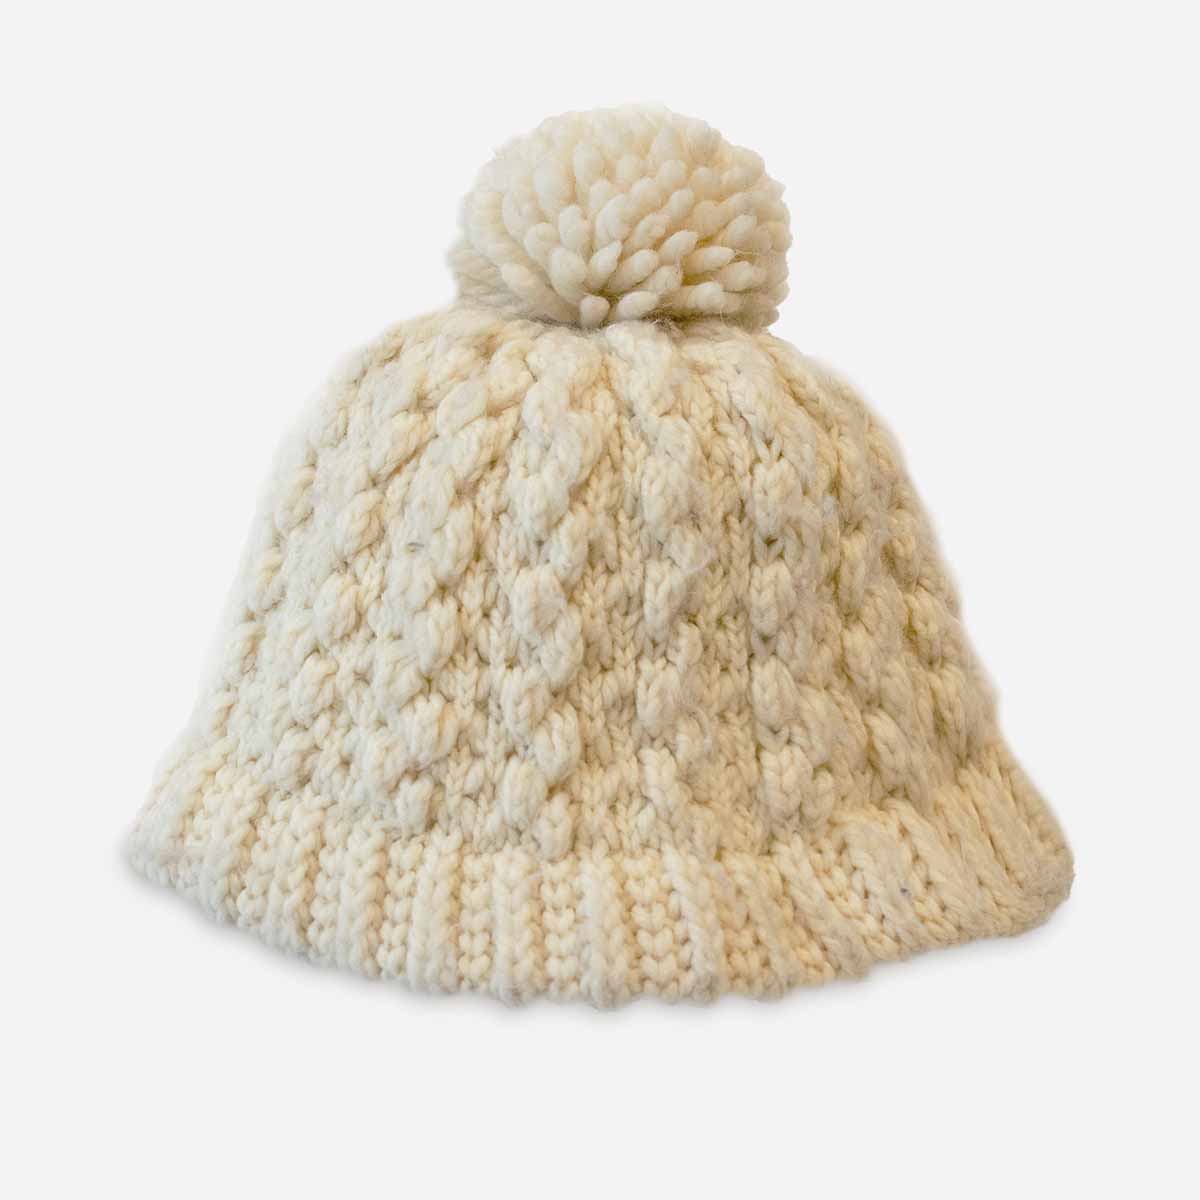 Hansen cream cable knit cap